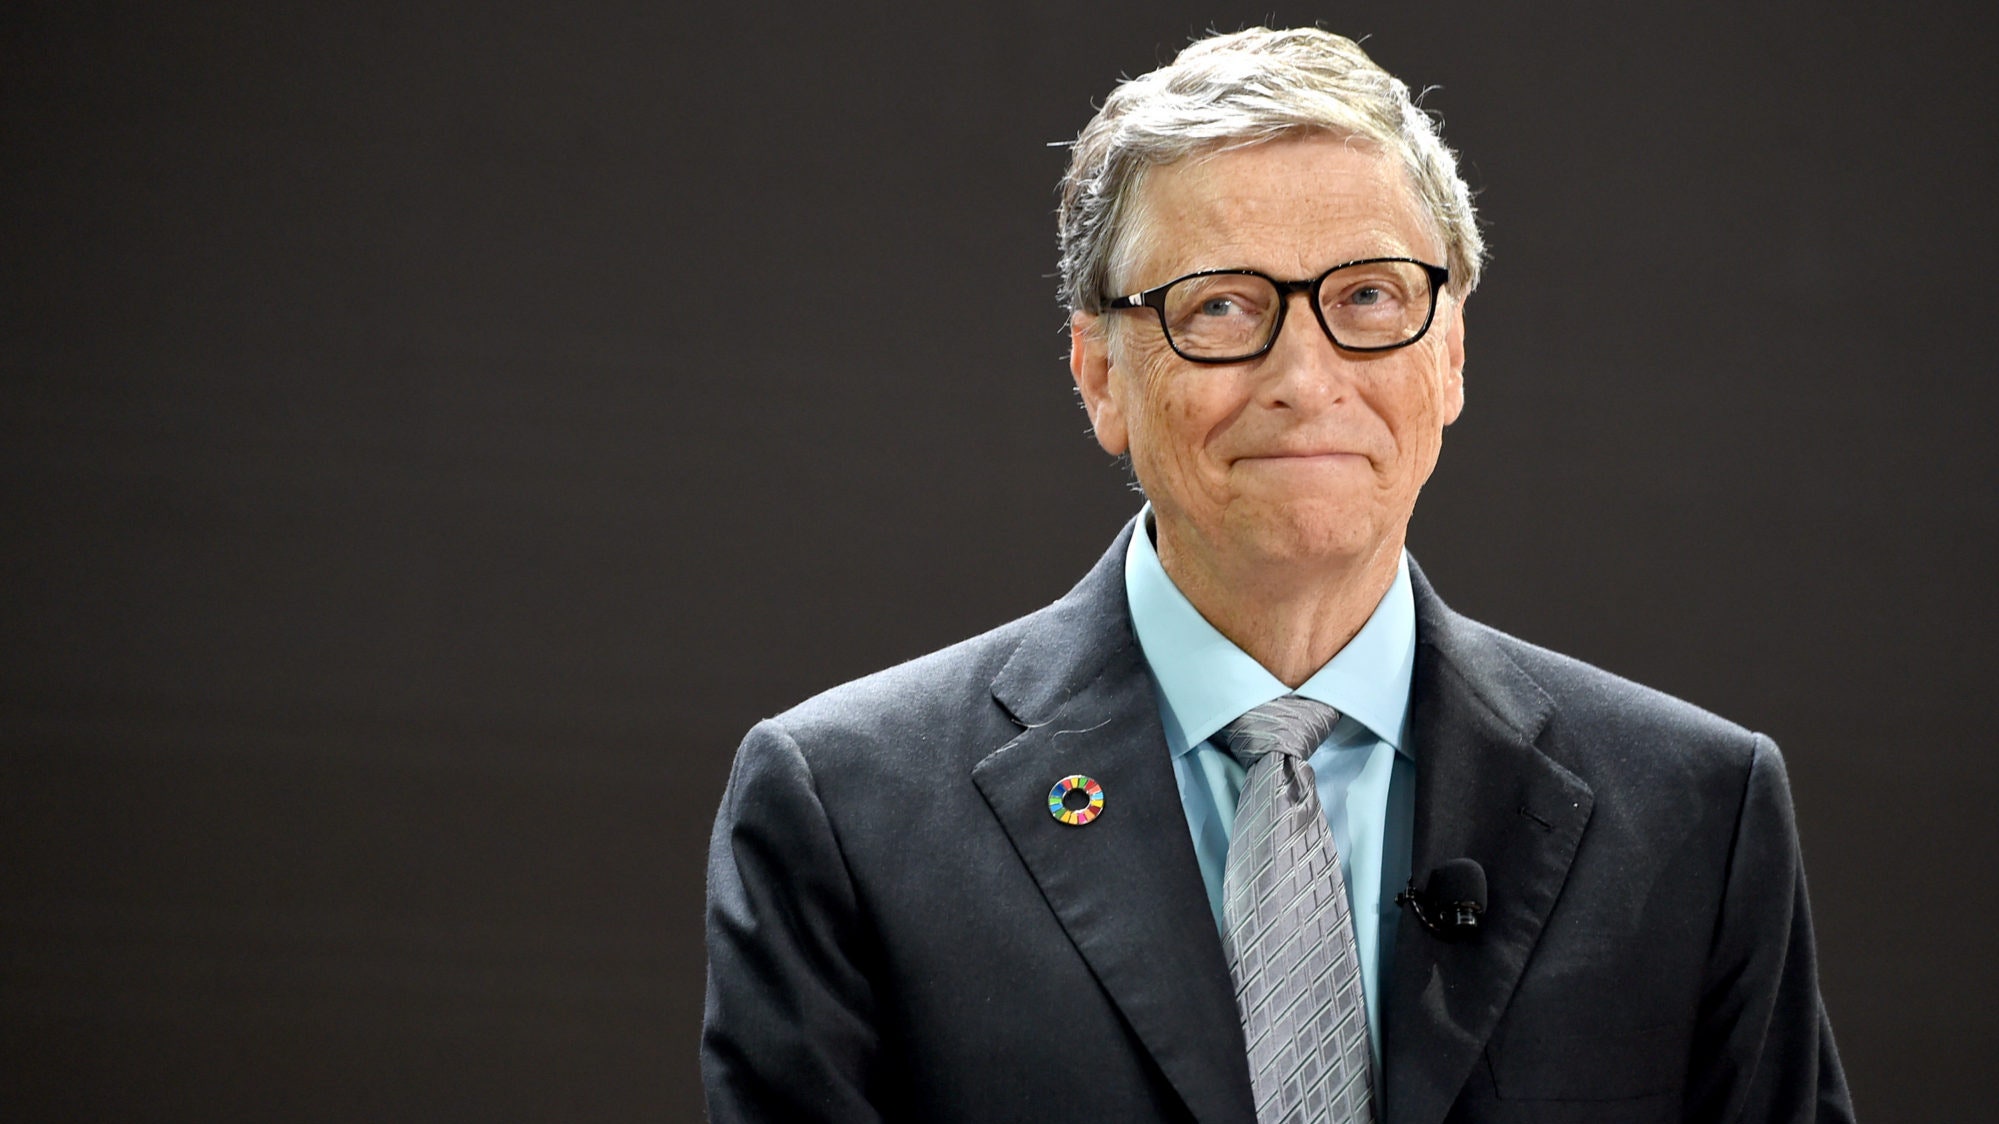 Билл Гейтс ответил на слухи о чипировании человечества